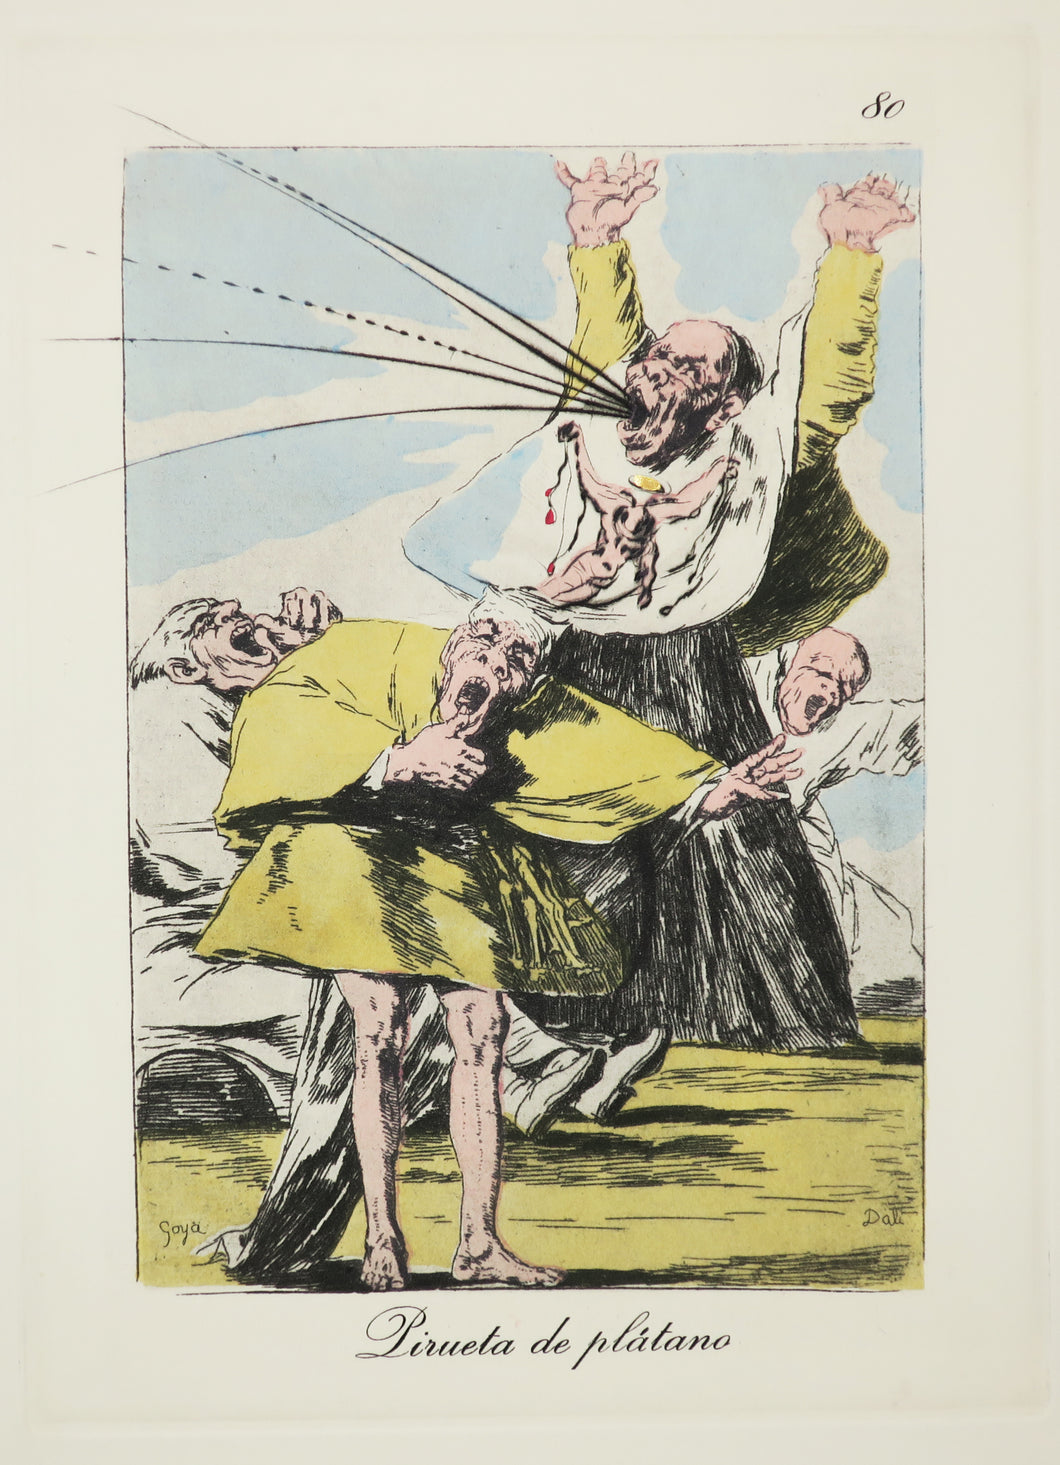 Pirueta de platano. Les Caprices de Goya de Dali.  1977.